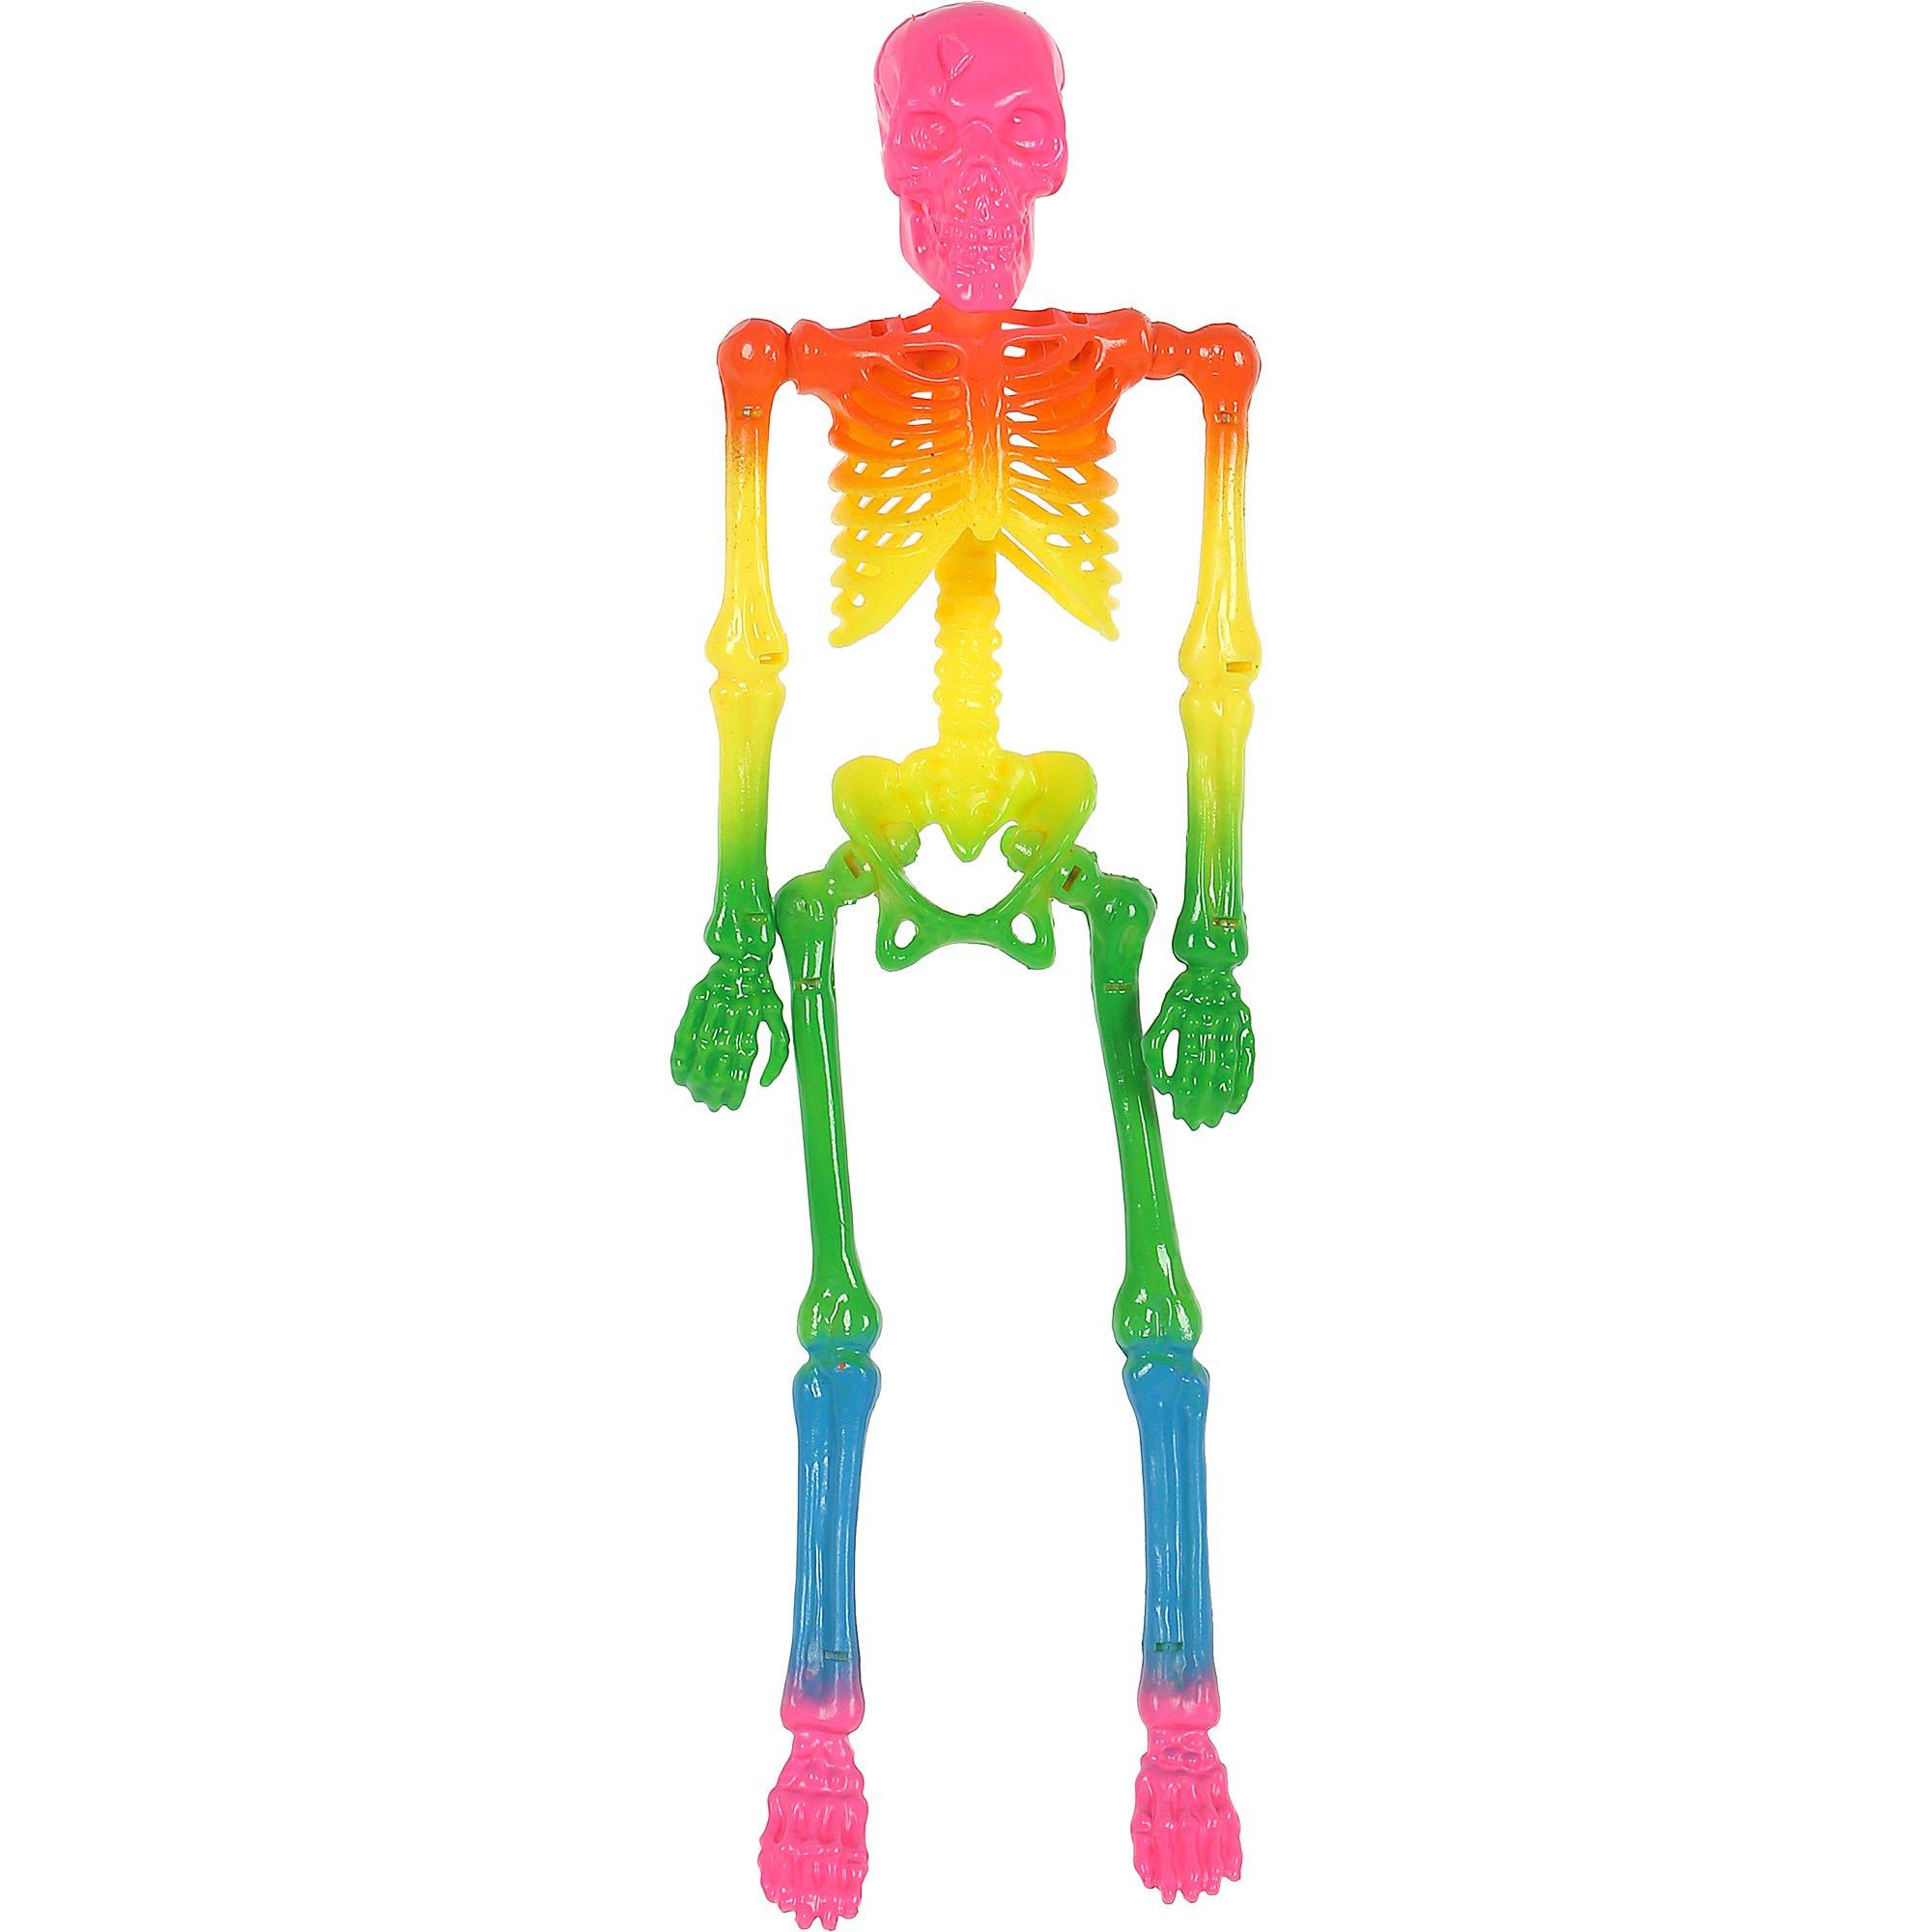  Mini Skeleton, Posable Skeleton Plastic Skeleton